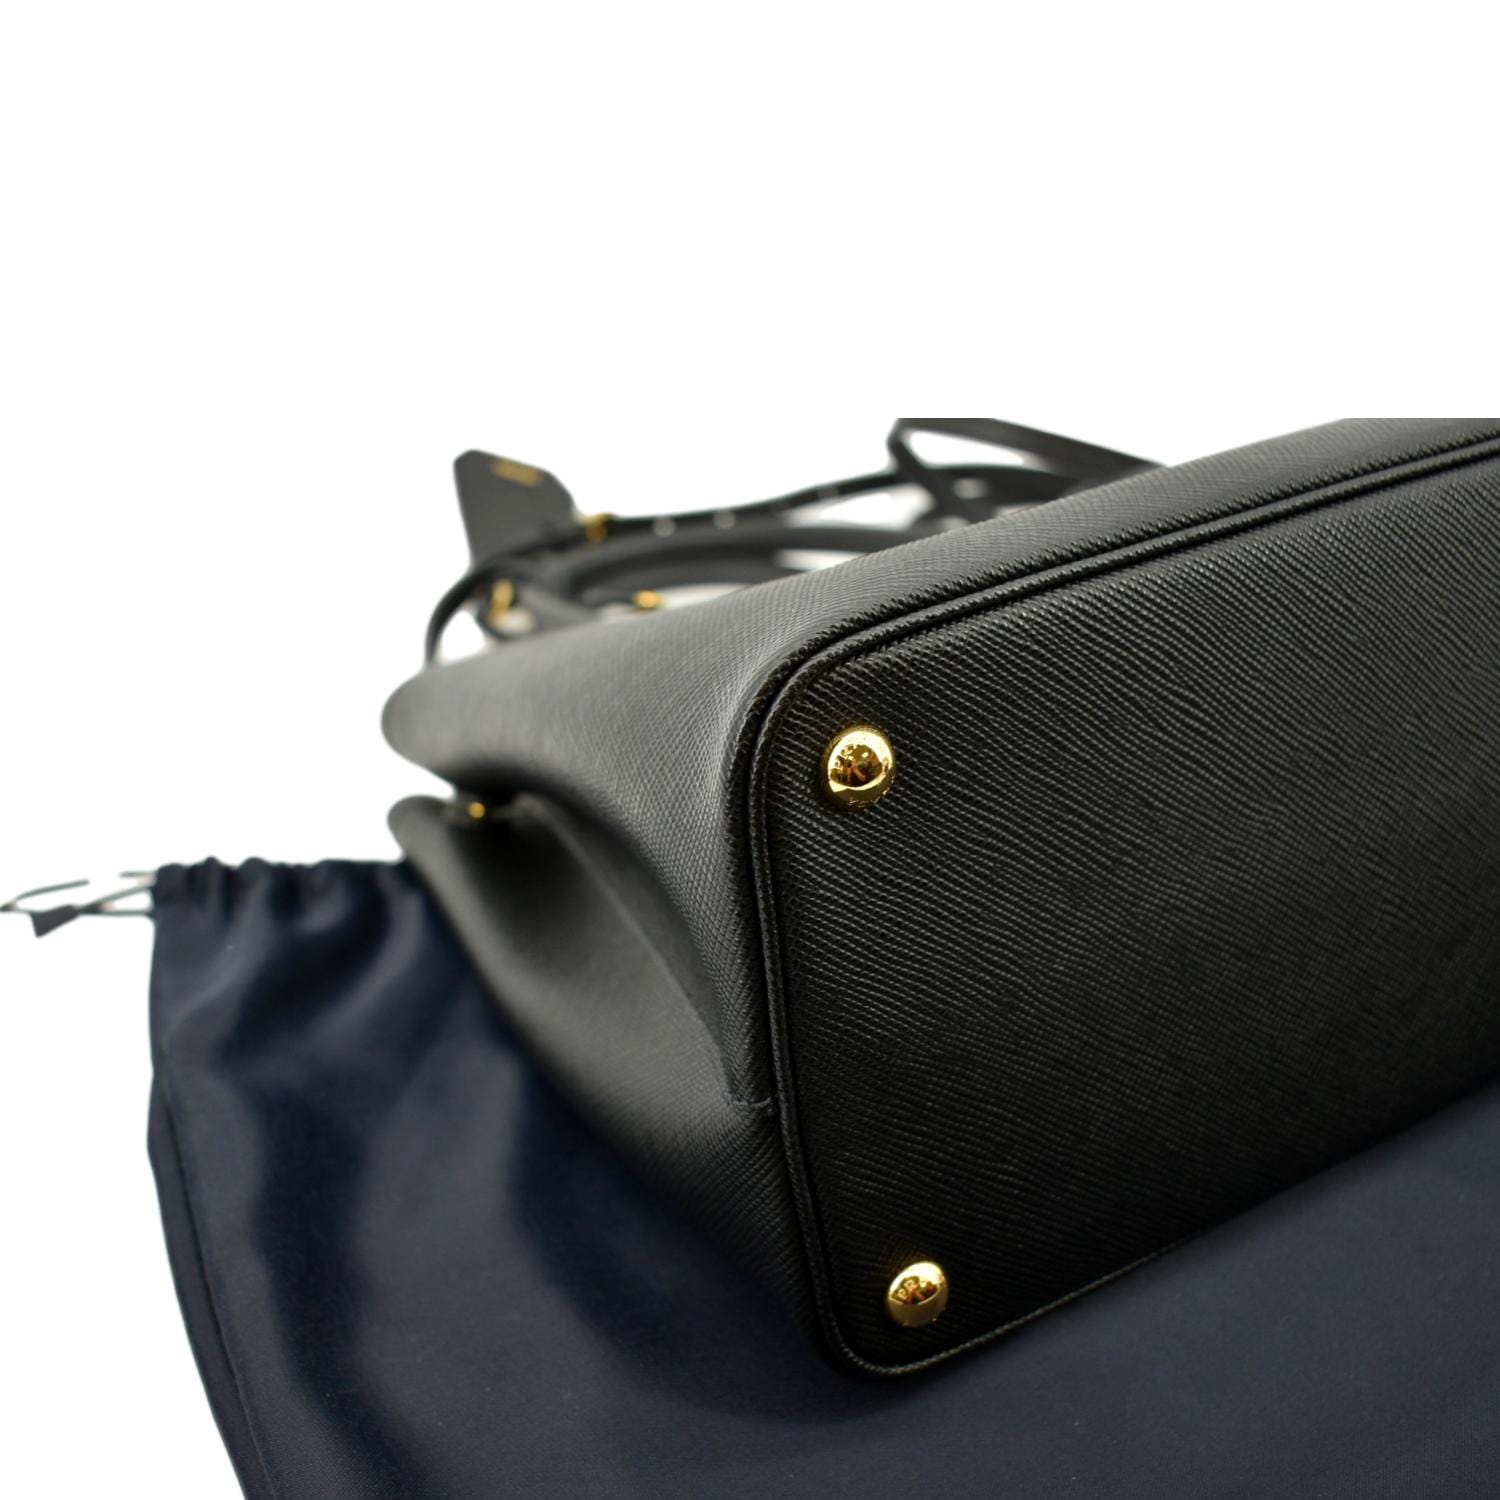 Prada Double Saffiano Leather Tote Bag in Black